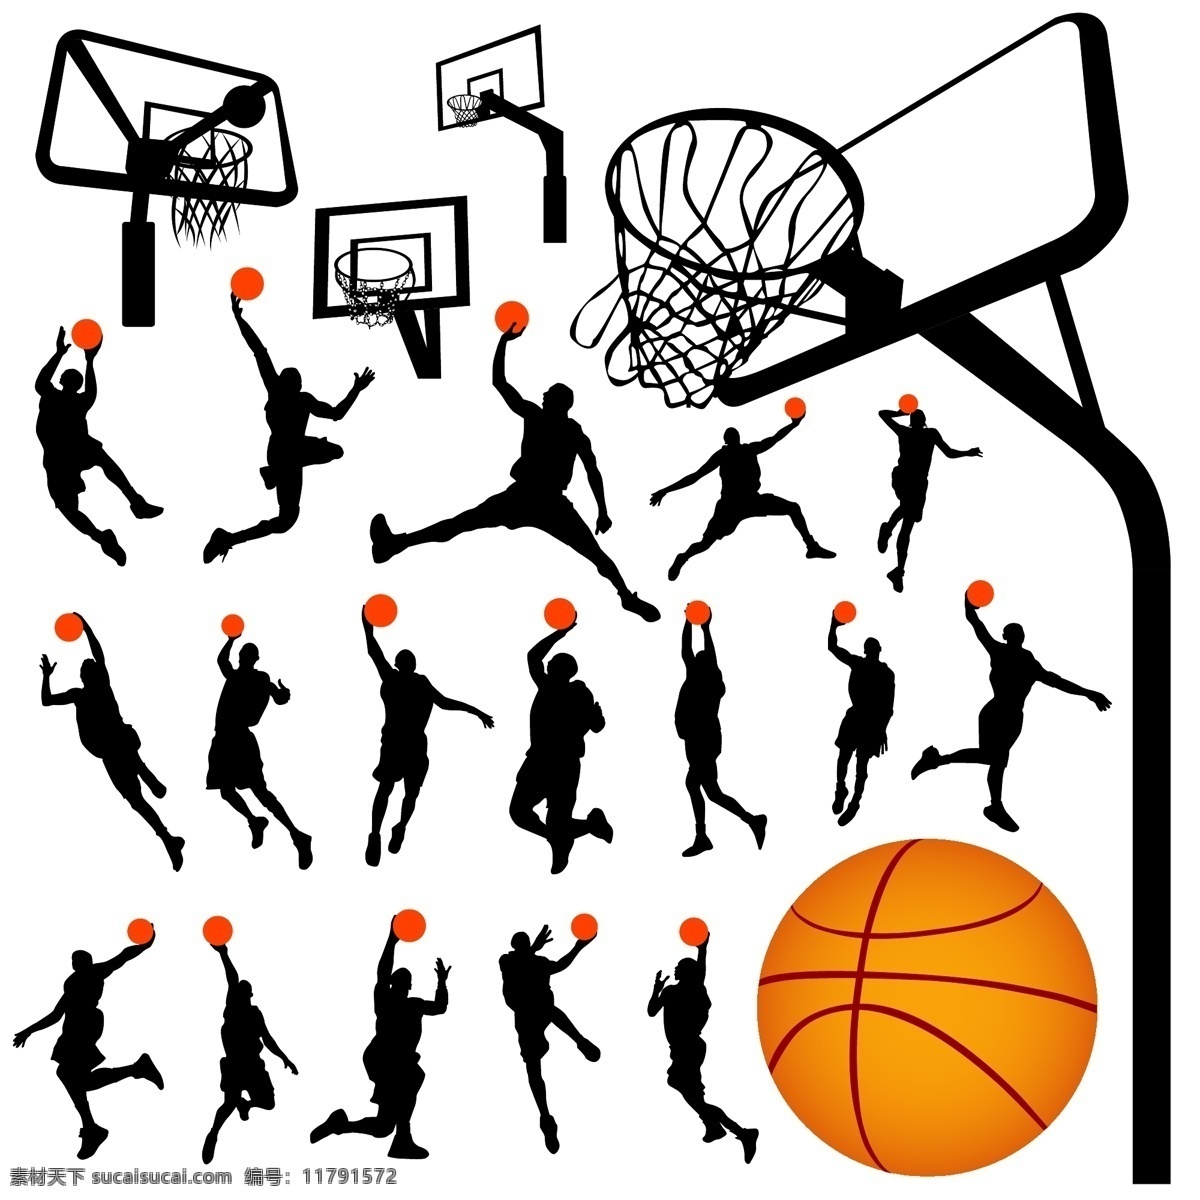 篮球 矢量图库 体育运动 文化艺术 正在 投篮 球 人 矢量 模板下载 各种 姿势 篮球姿势 psd源文件